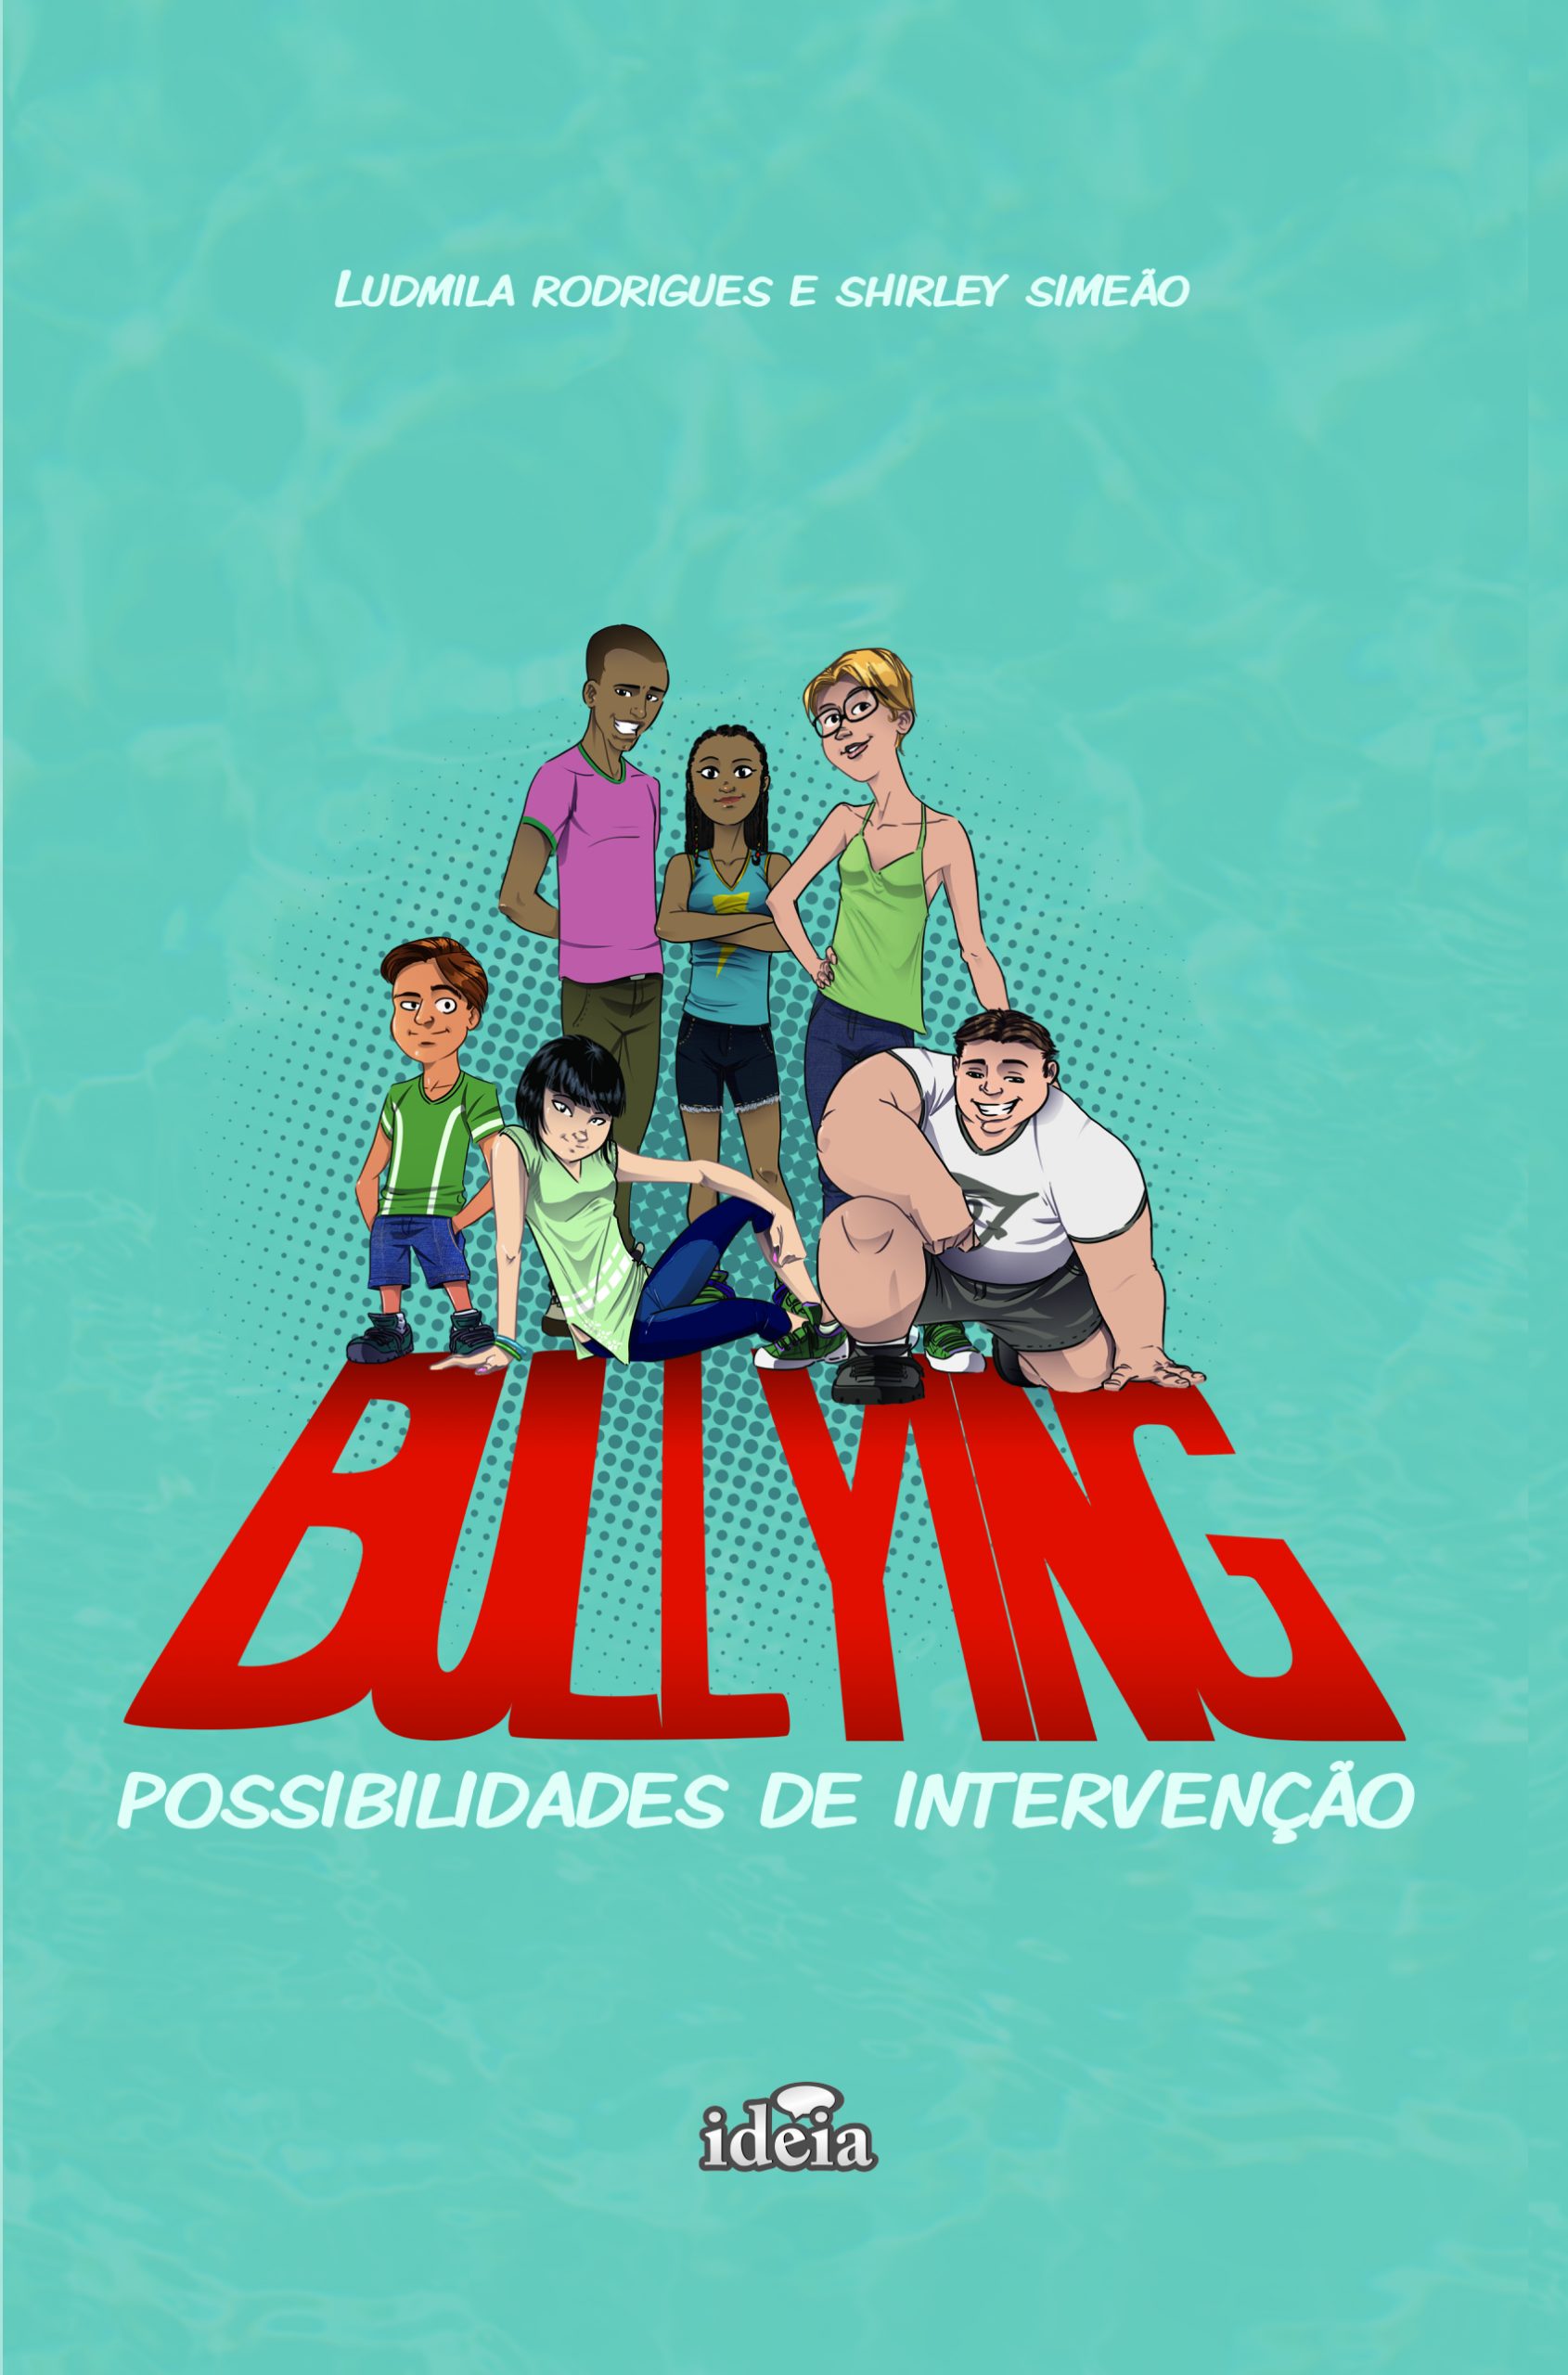 Jogo «Bullying: Um dia na Escola»